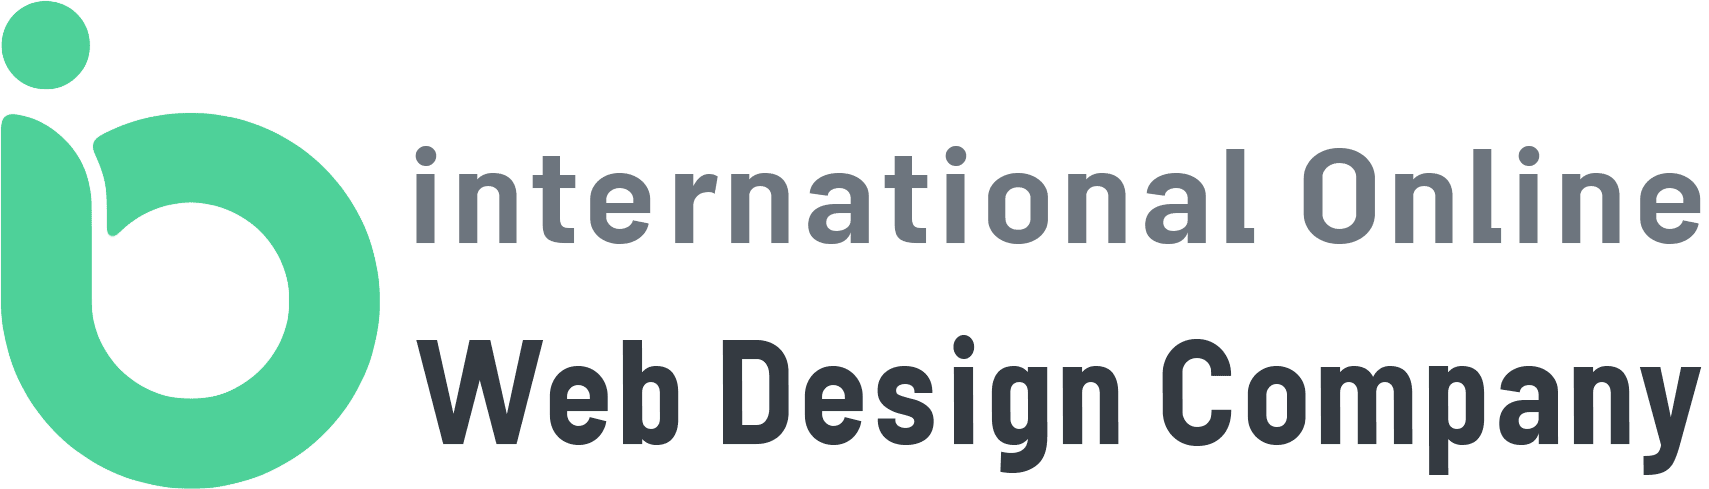 IO Web Design